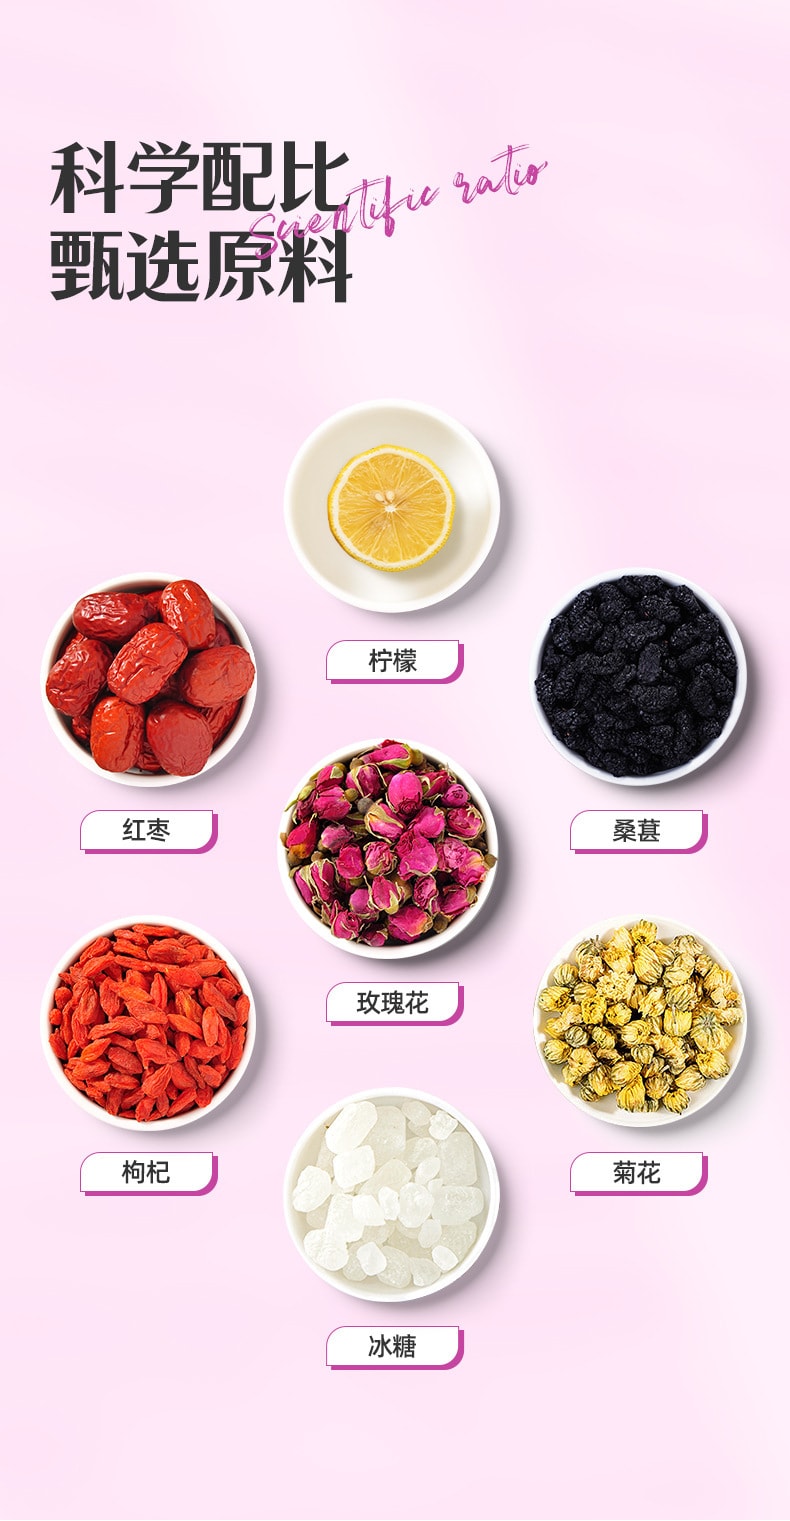 【中国直邮】白云山 玫瑰柠檬茶 调理血气 促进血液循环 养颜美容120克袋(10克×12包)